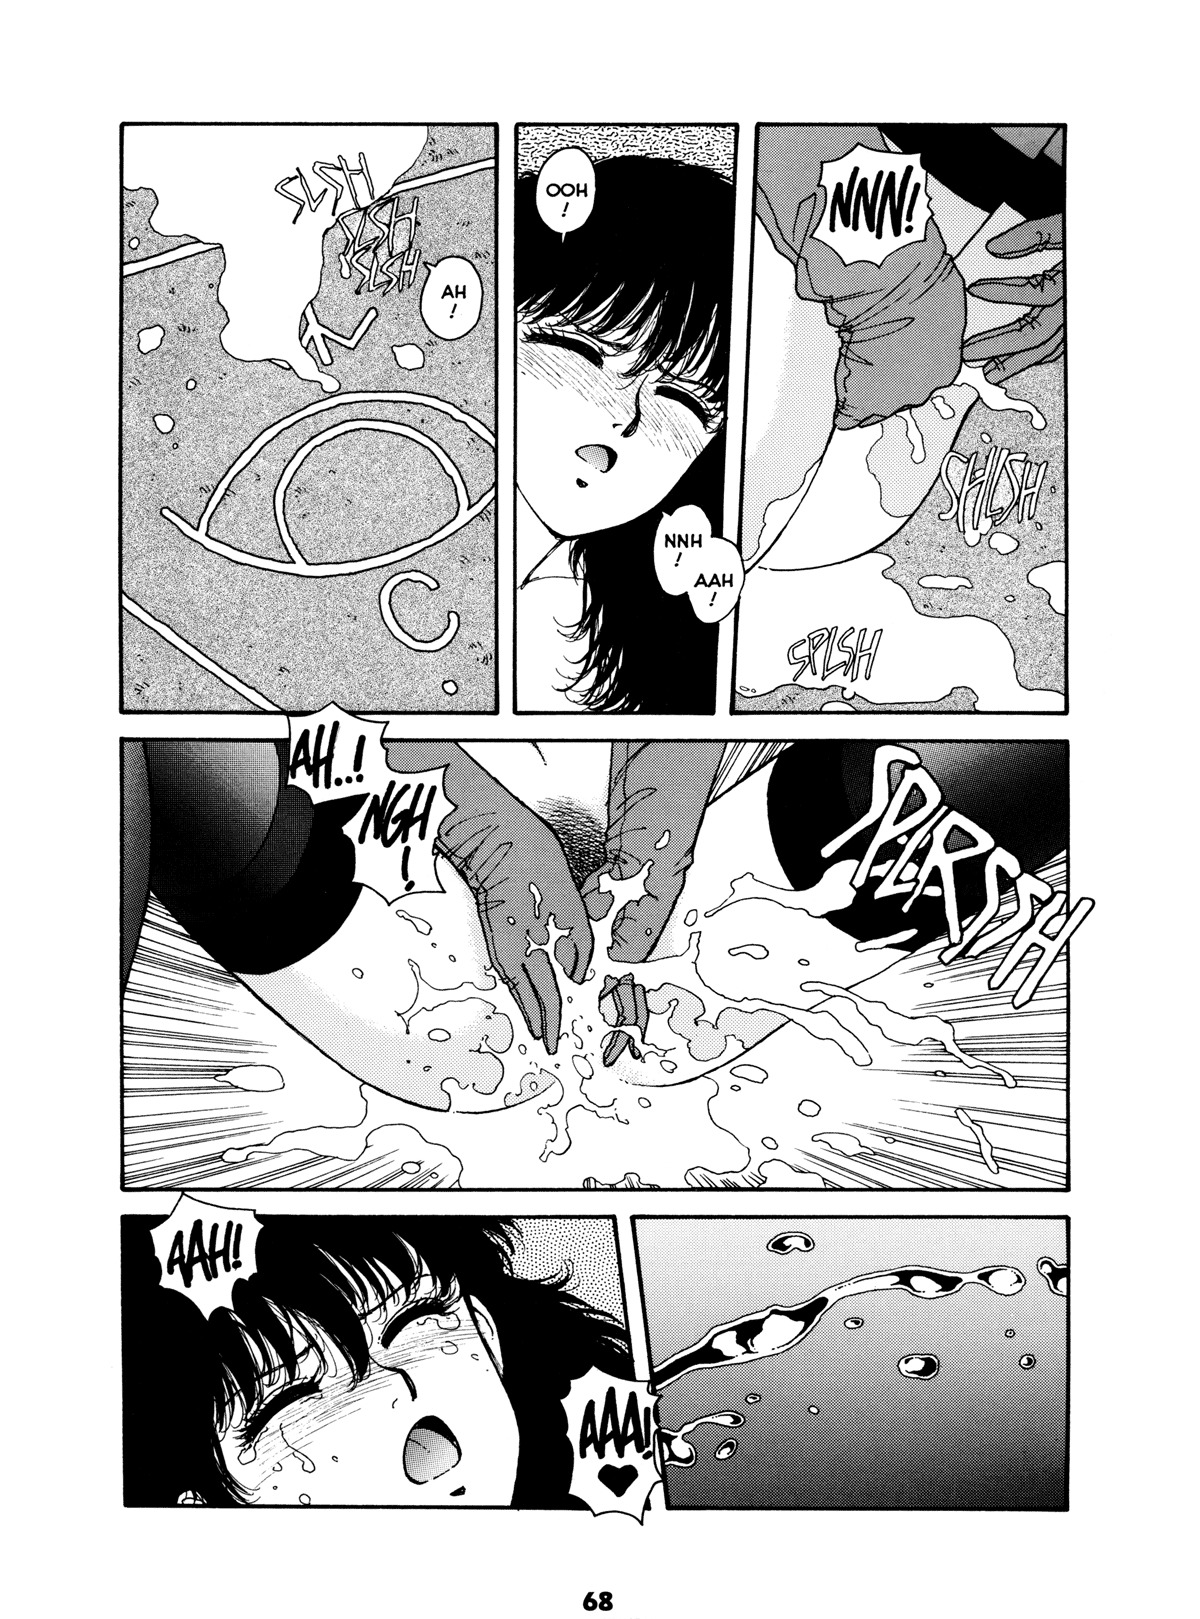 Misty Girl Extreme 67 hentai manga